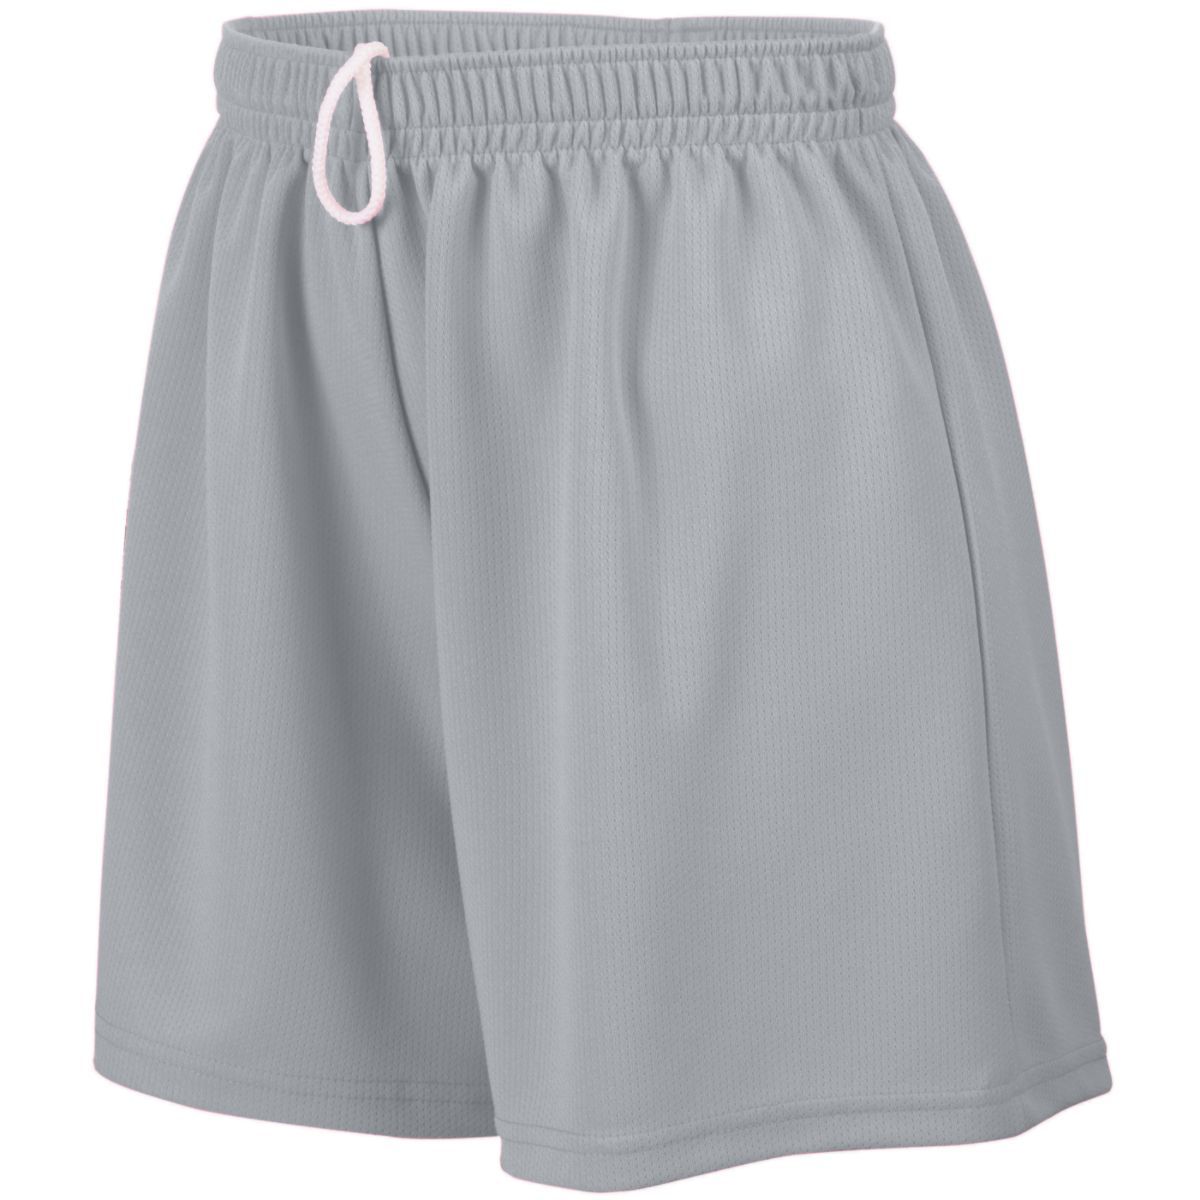 Ladies Wicking Mesh Shorts 960